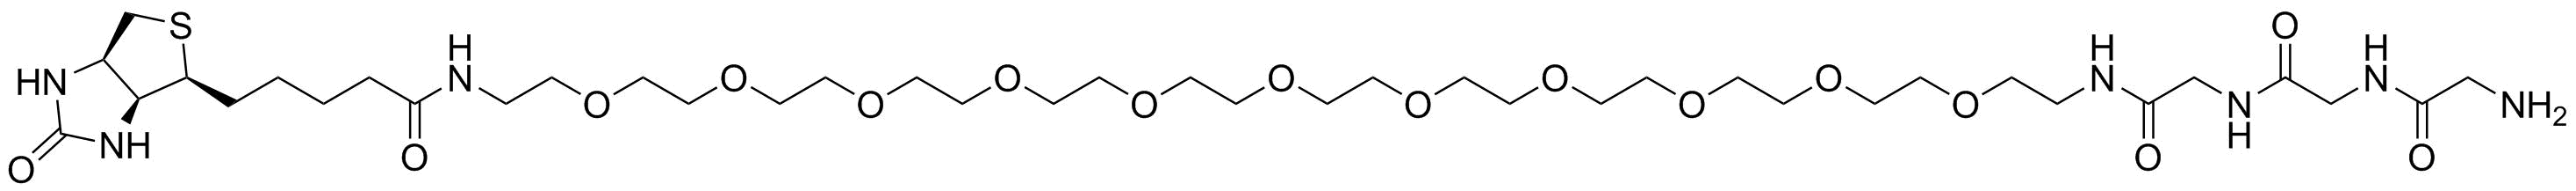 Biotin-PEG11-Gly-Gly-Gly-amine